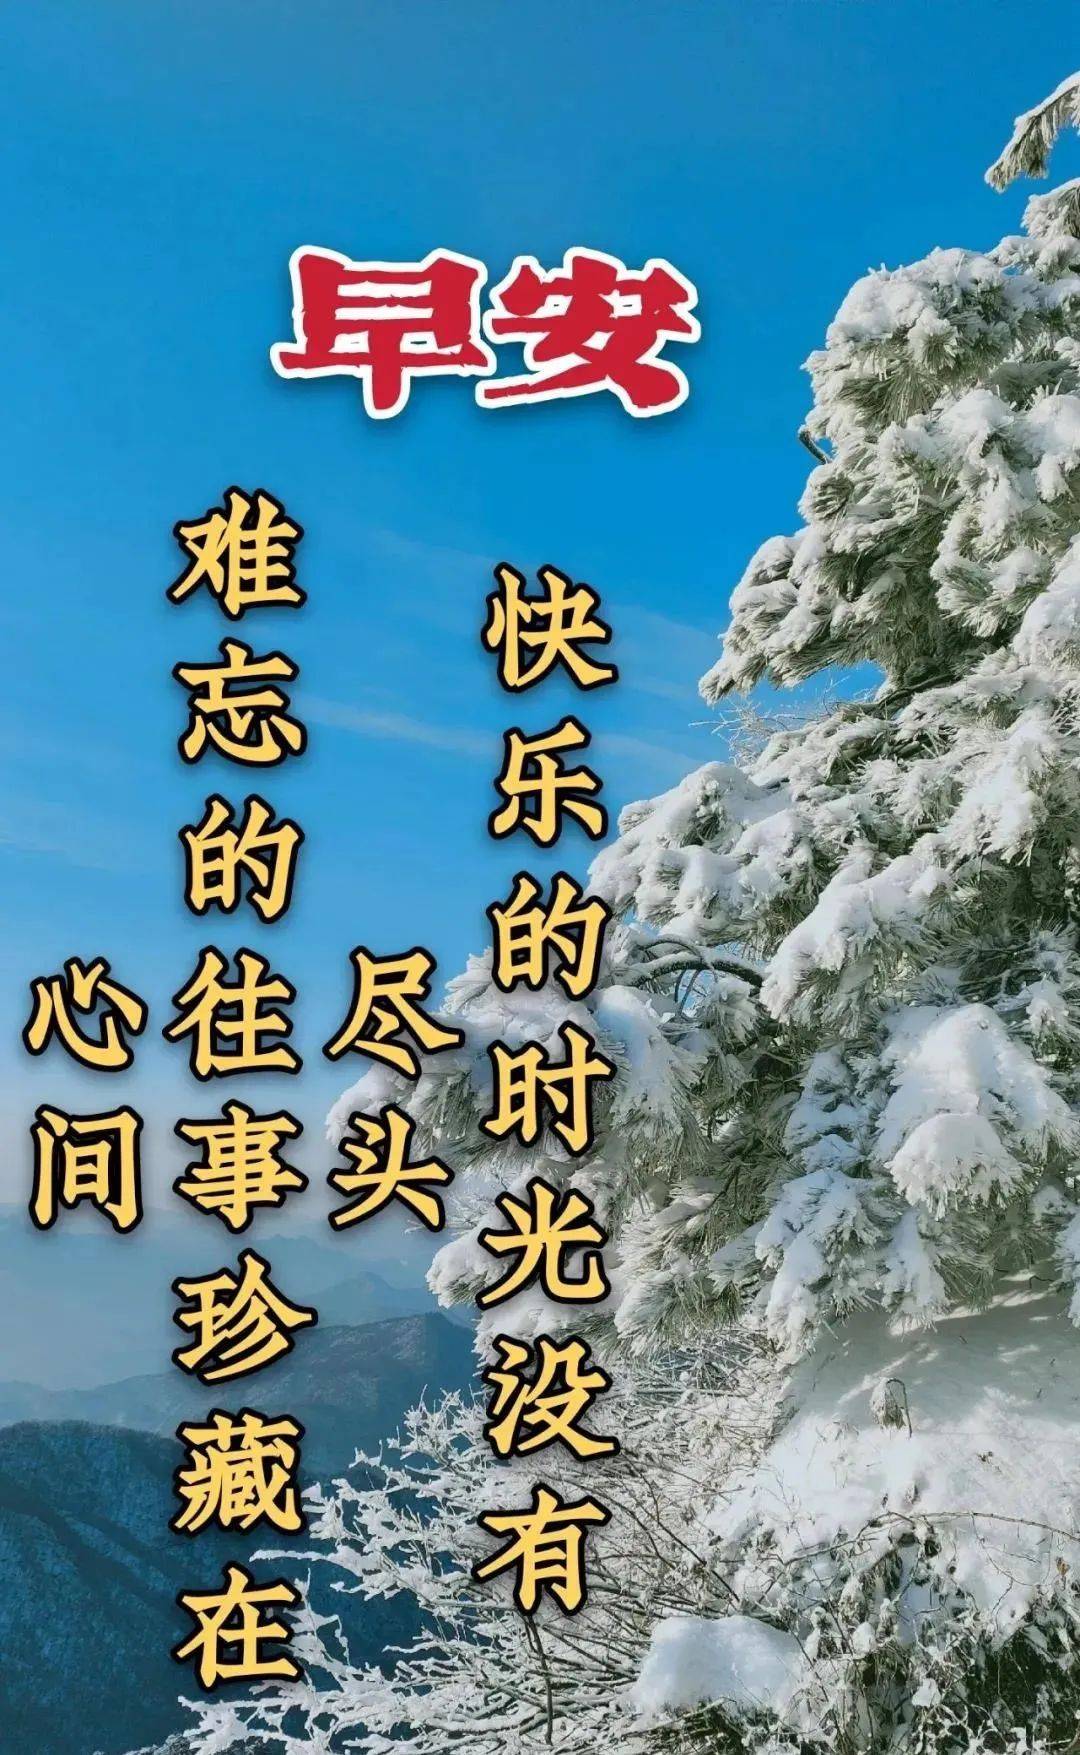 8张最新冬日风景雪景早上好祝福图片带字温馨